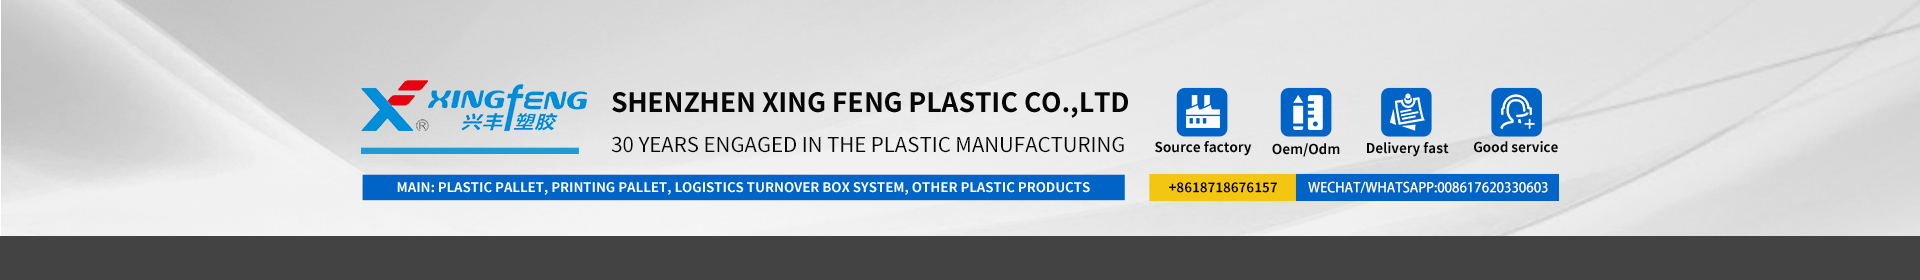 L'azienda di plastica xingfeng è professionale nei prodotti in plastica da 30 anni